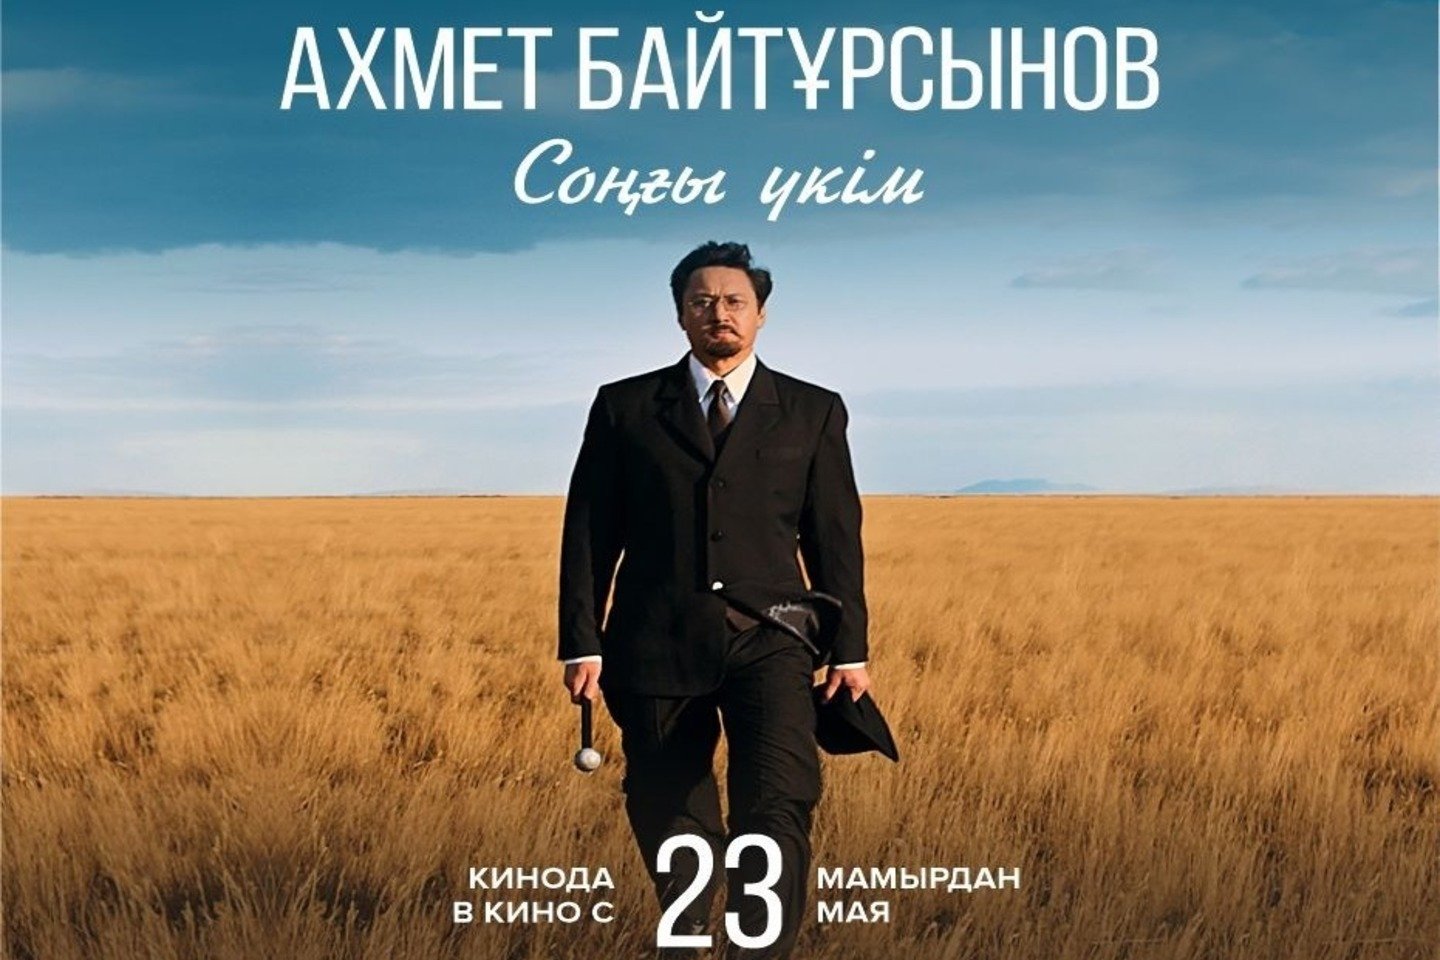 Усть-Каменогорск и ВКО / Ахмет Байтұрсынов туралы жаңа фильм жарыққа шығады